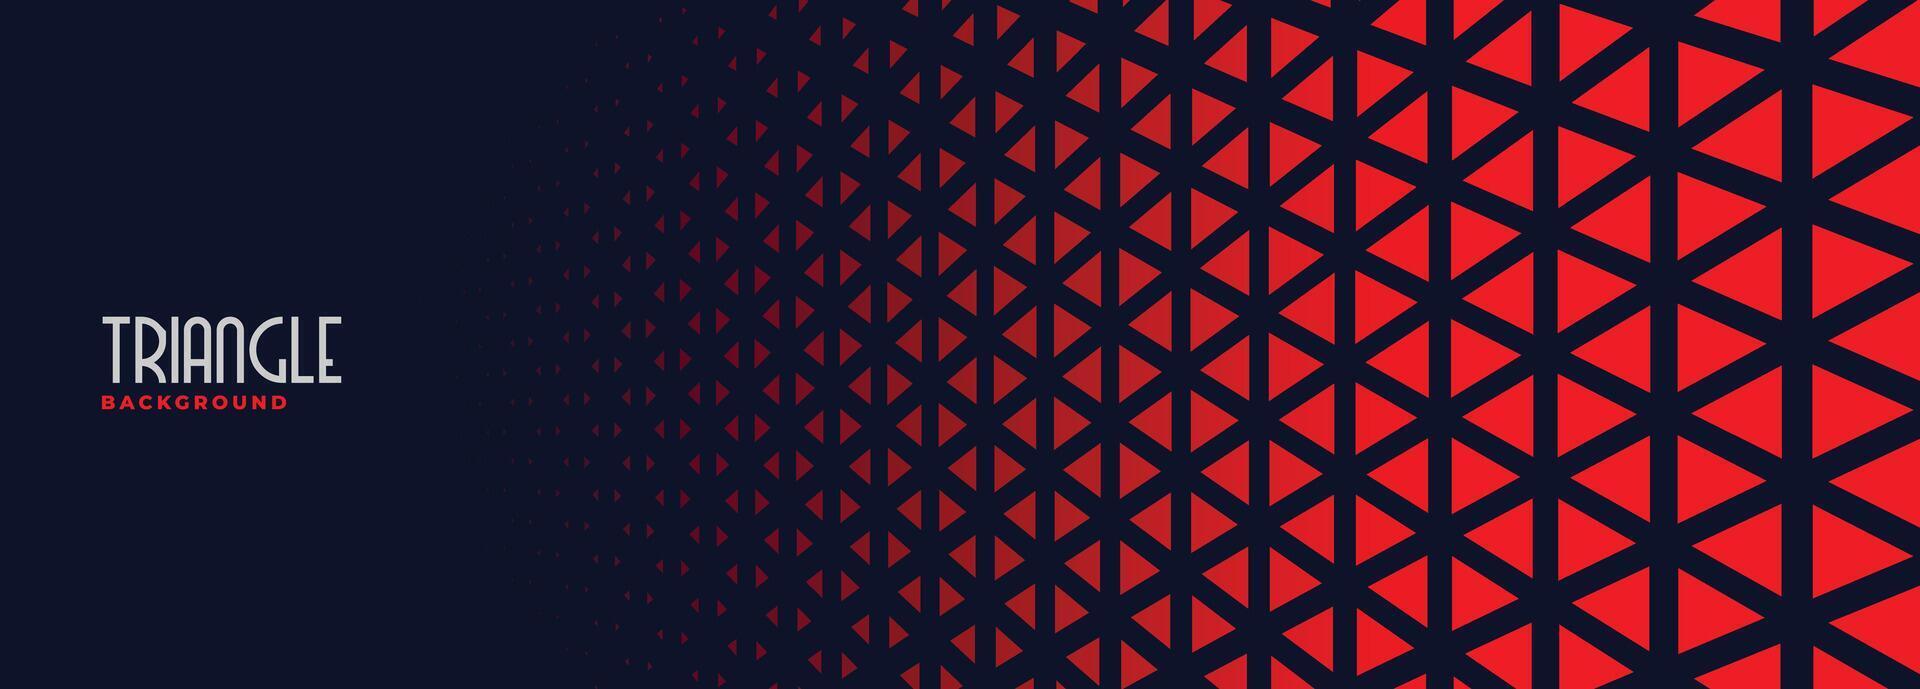 patrón de triángulos rojos en banner negro vector